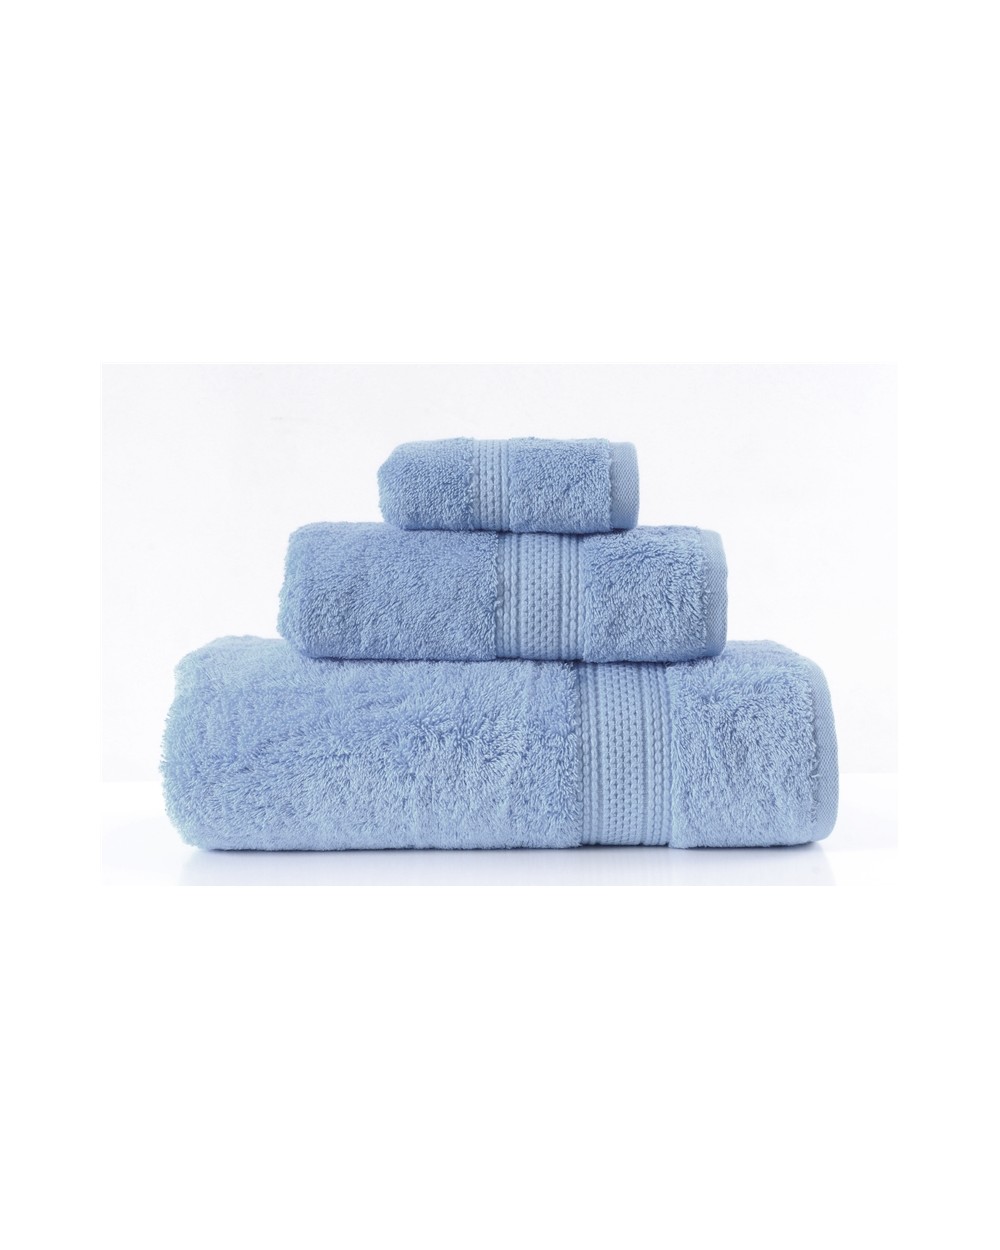 Ręcznik bawełna egipska 30x50 Egiptian Cotton baby blue Greno